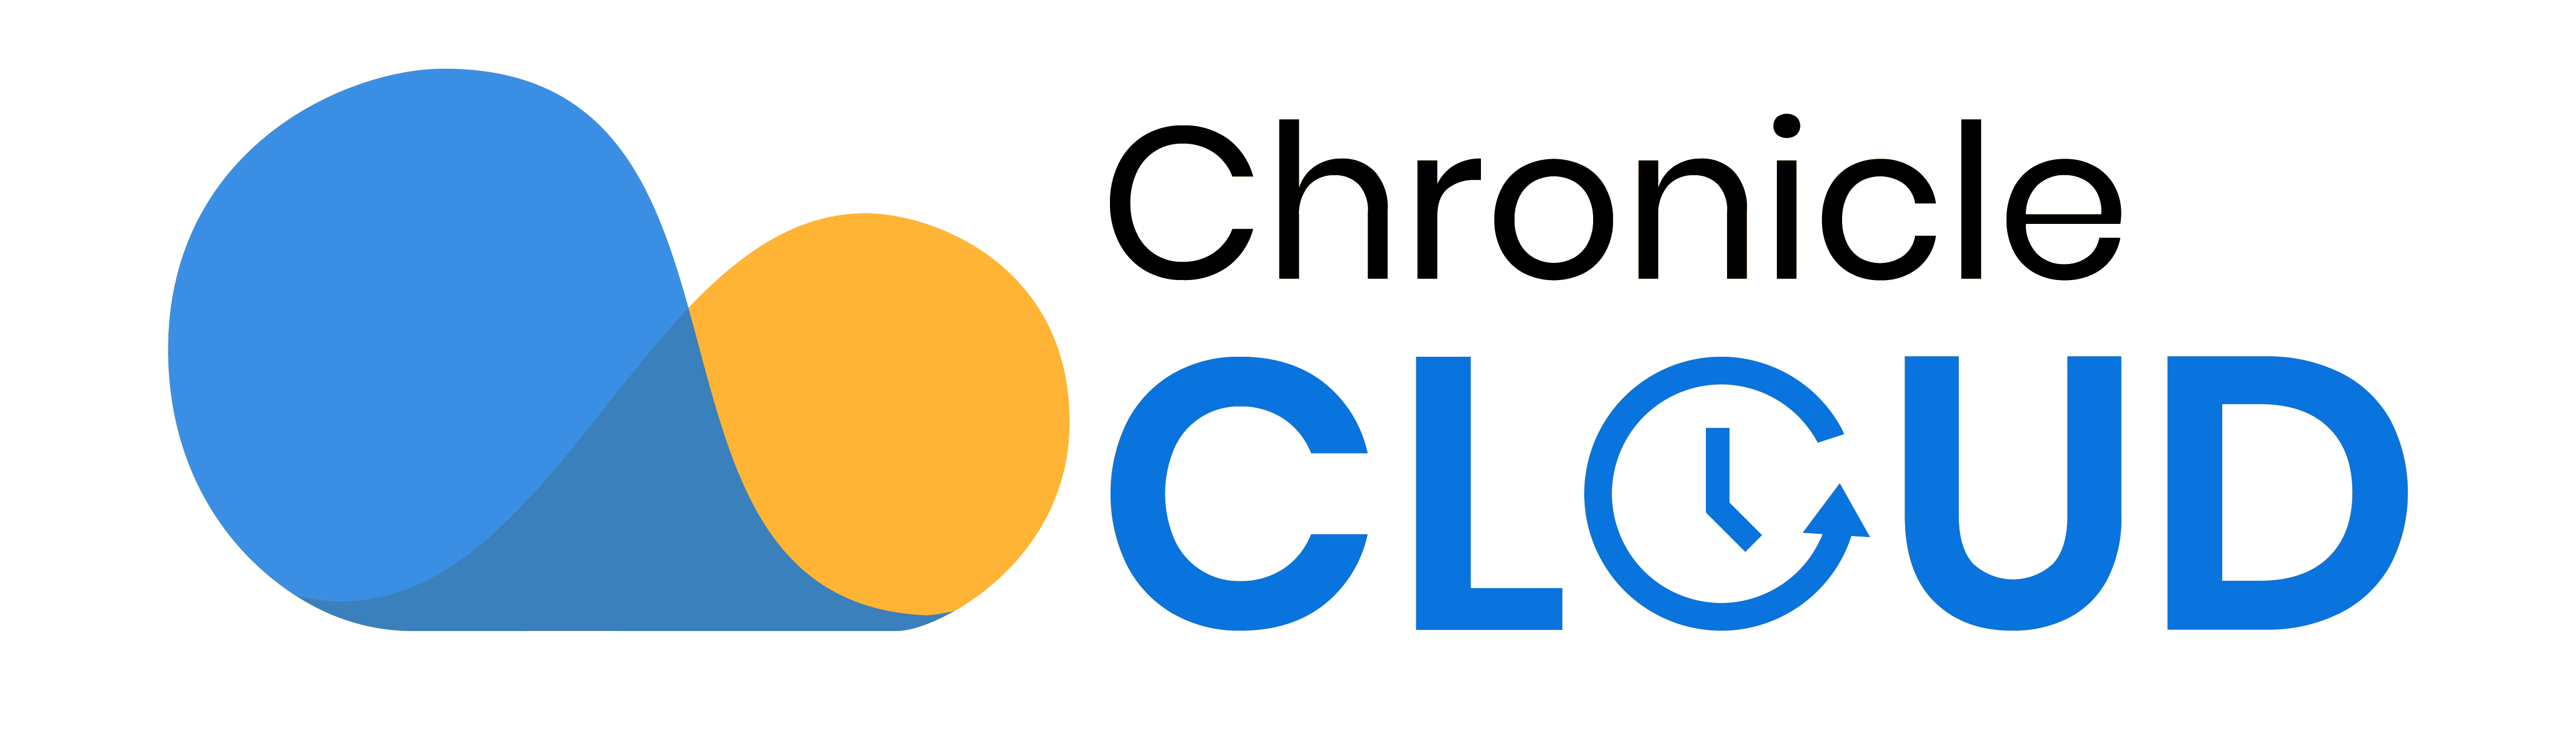 Chronicle Cloud